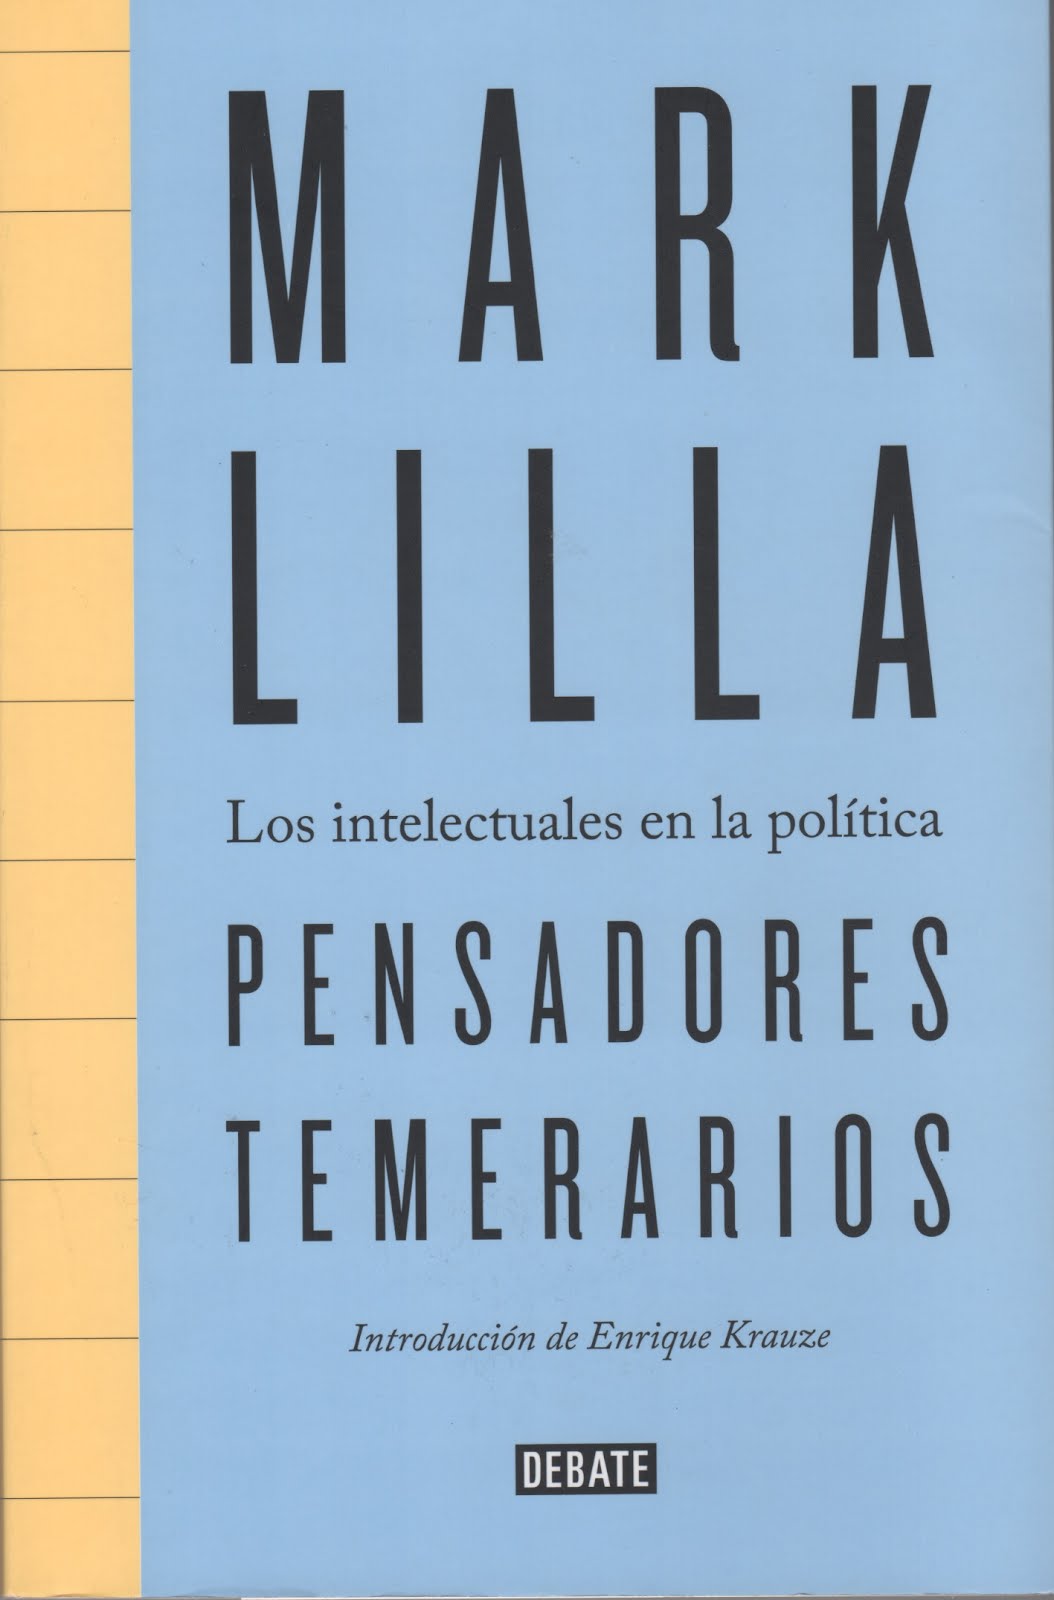 Mark Lilla (Pensadores temerarios) Los intelectuales en la política